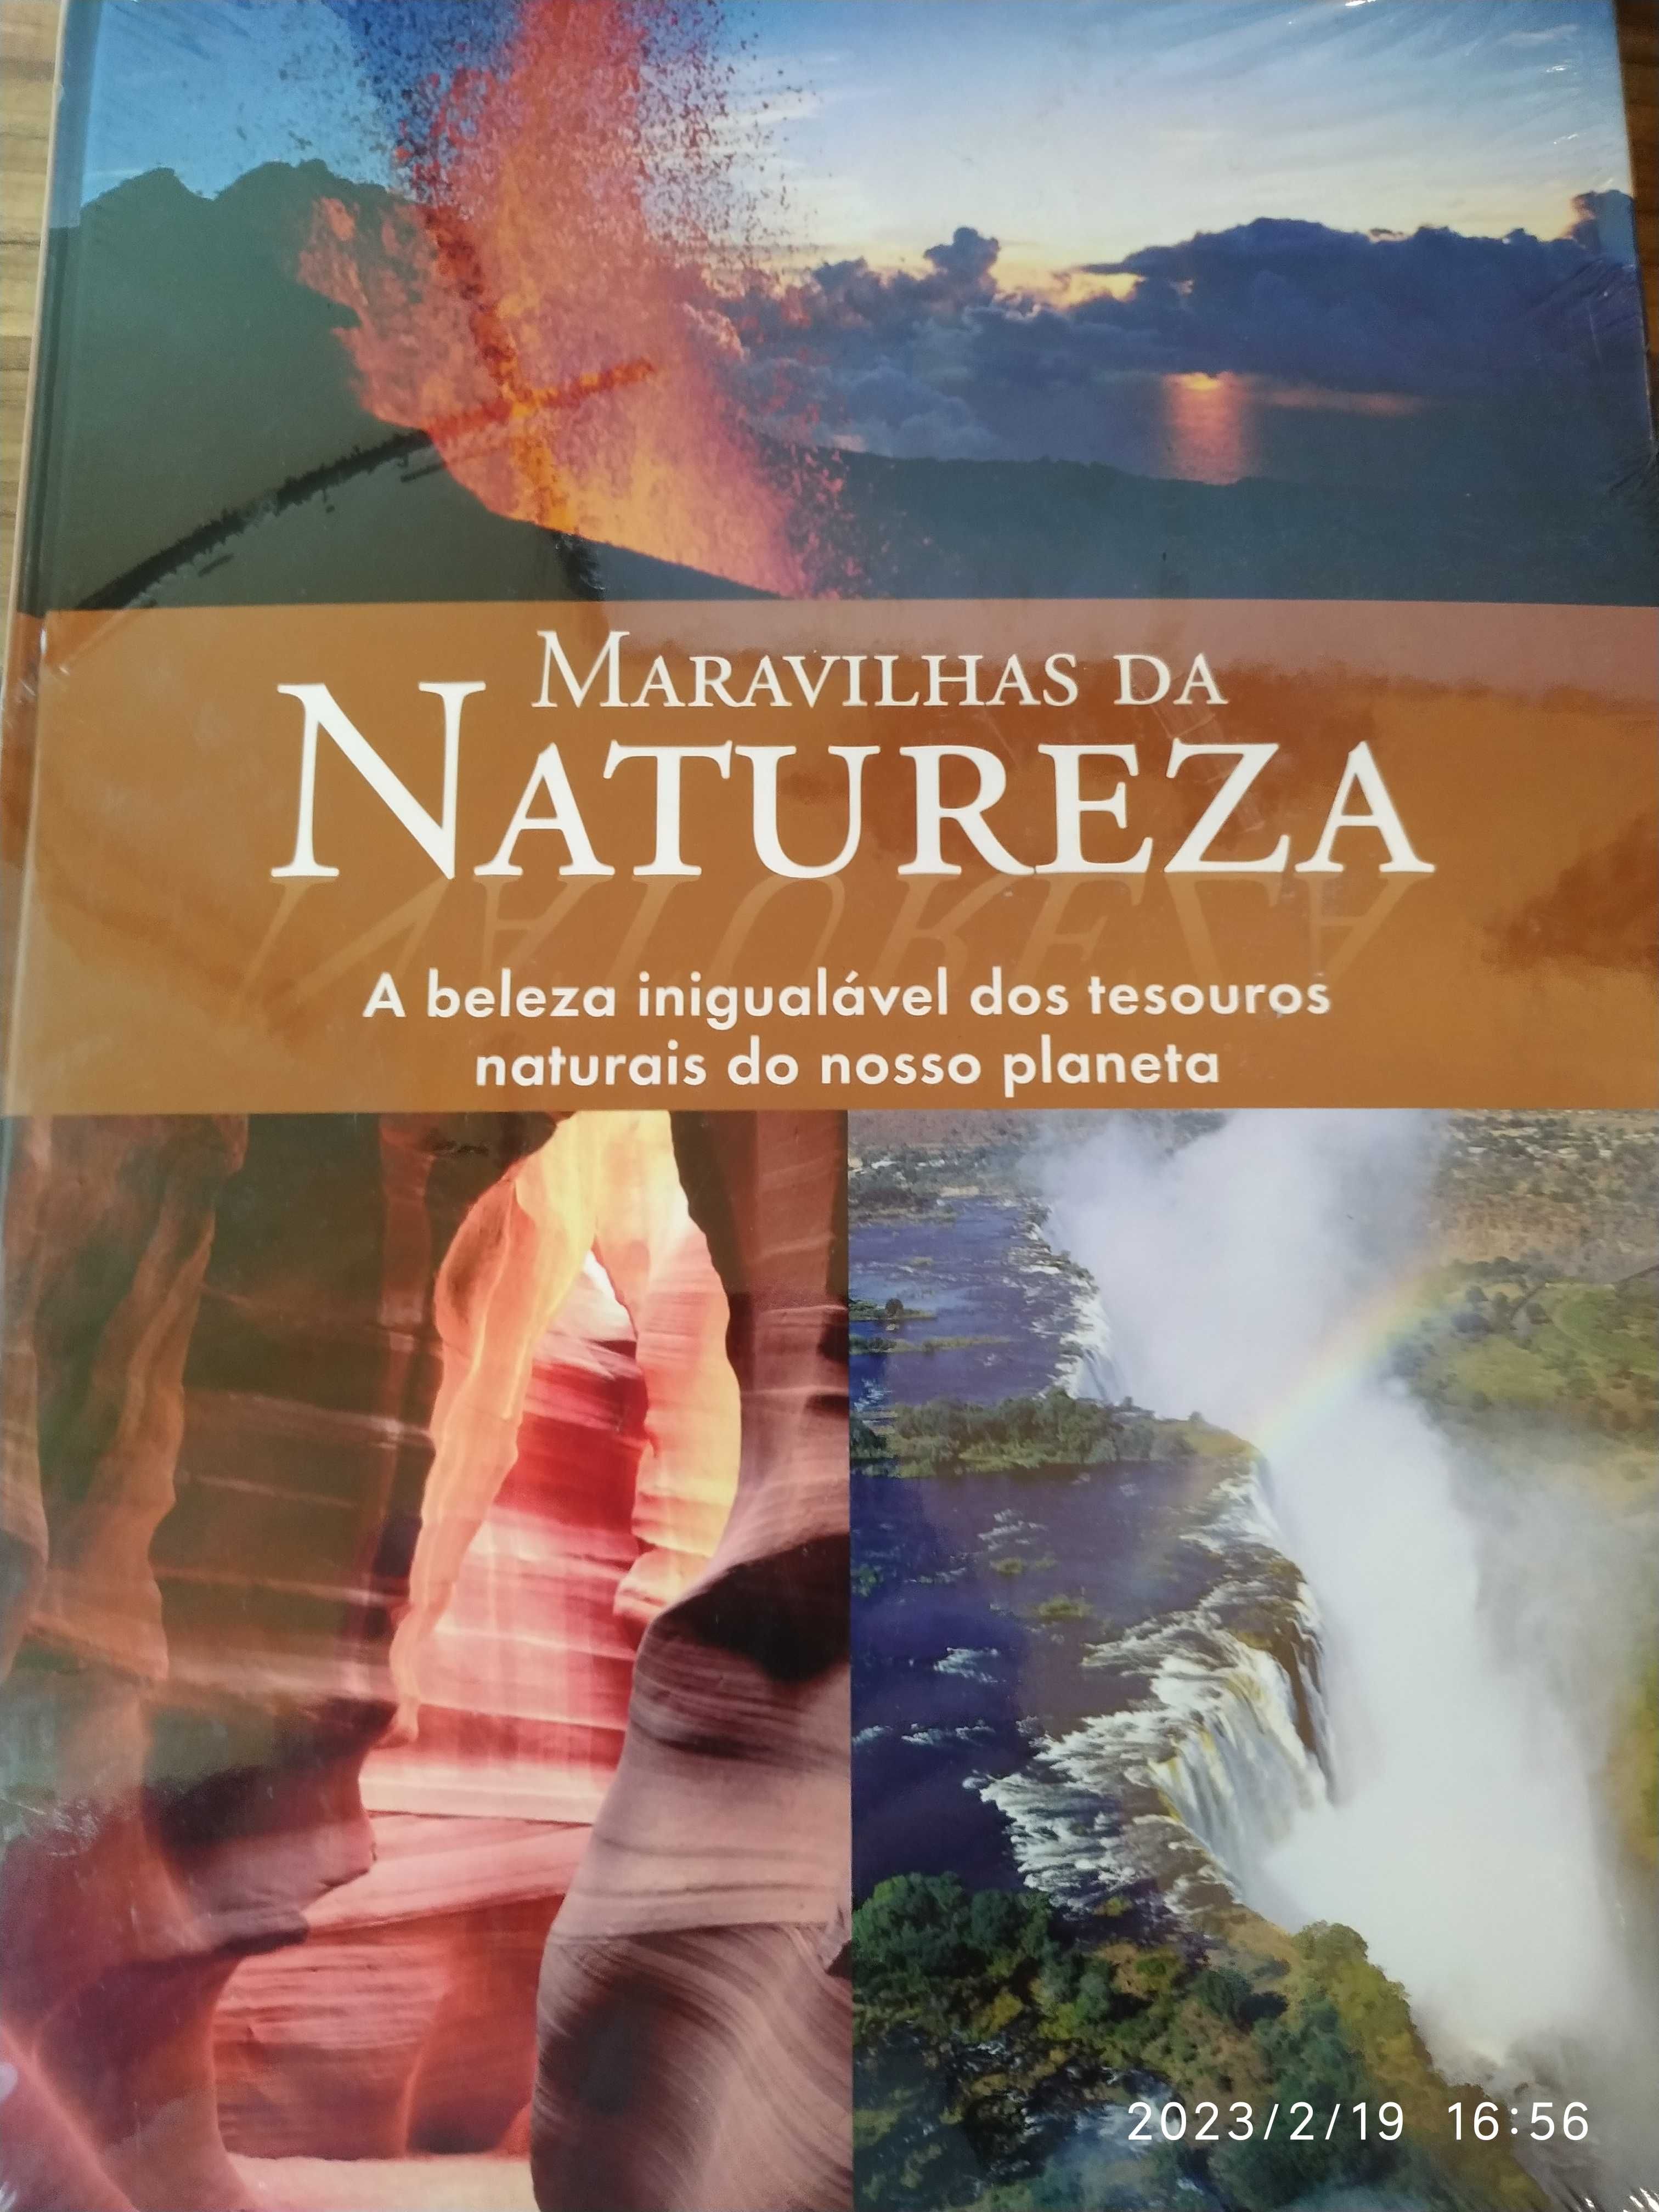 Livro "Maravilhas da Natureza"